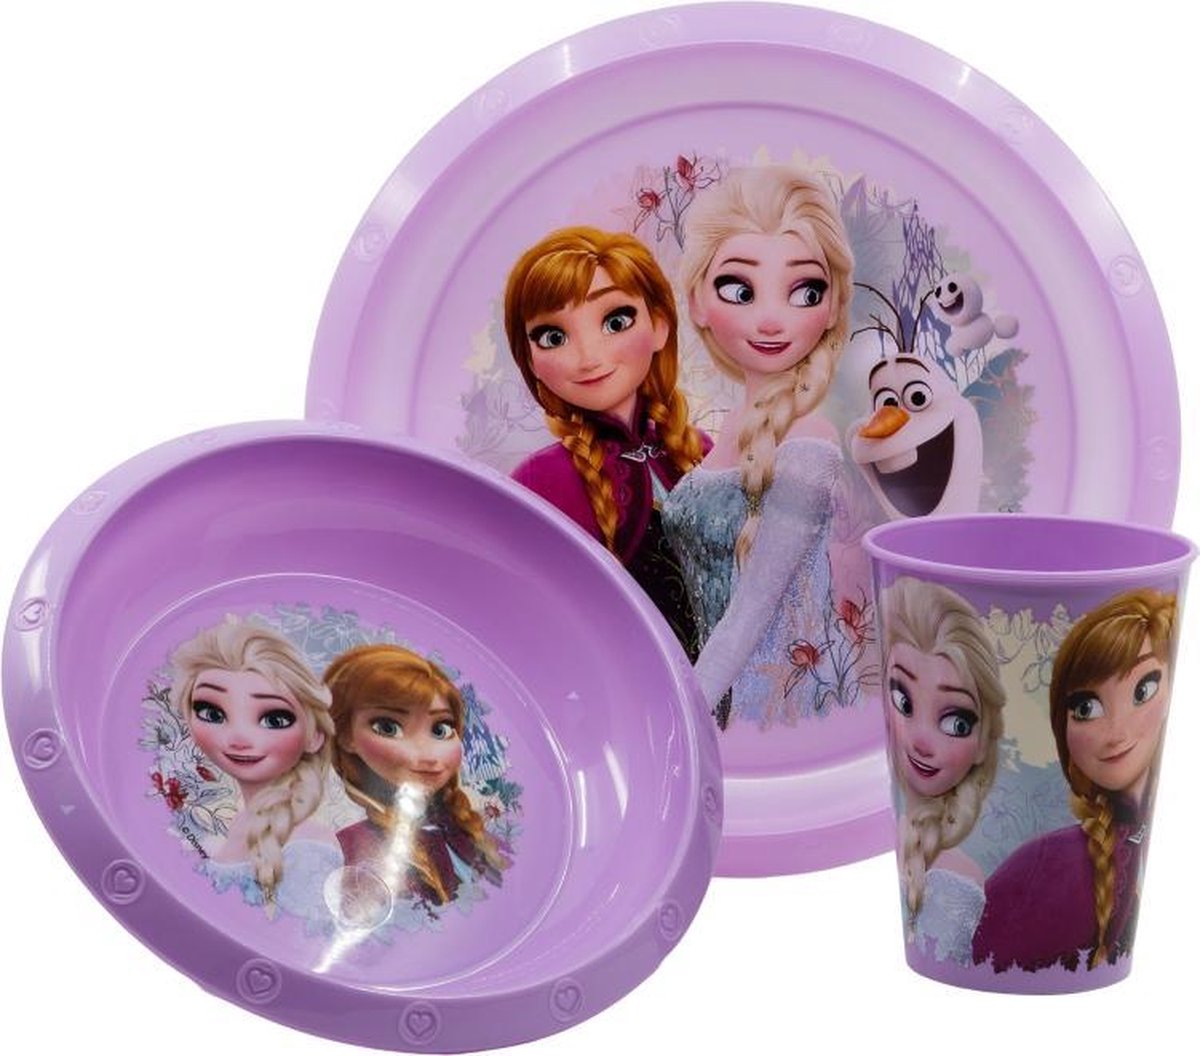 Frozen kinderservies - 3 delig - Disney Frozen servies - paars